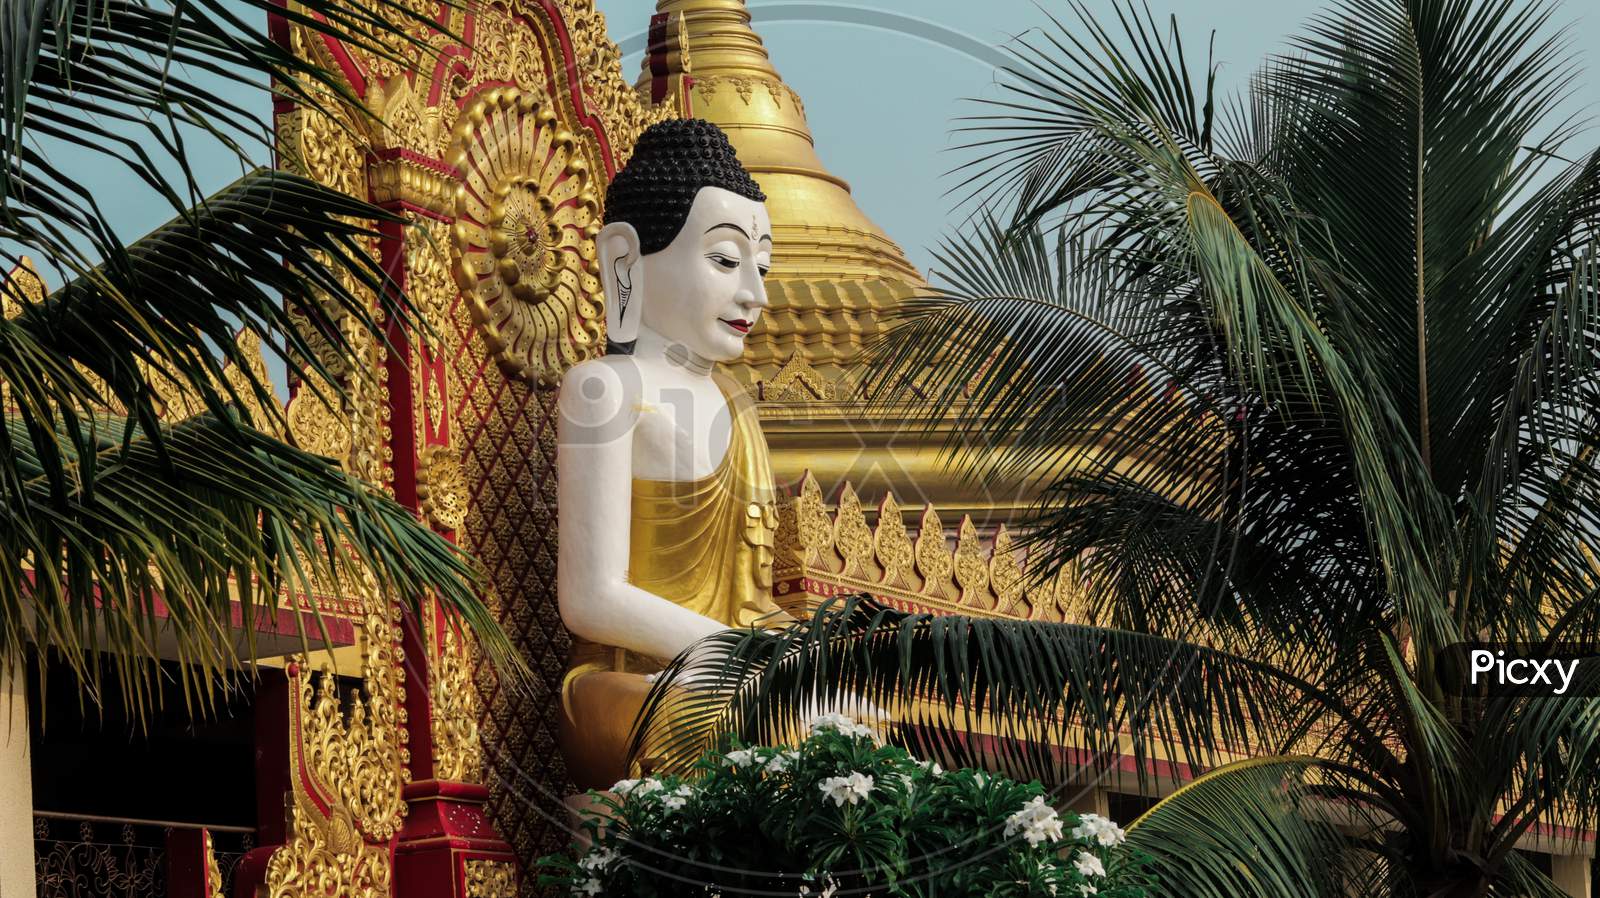 Lord Buddha statue